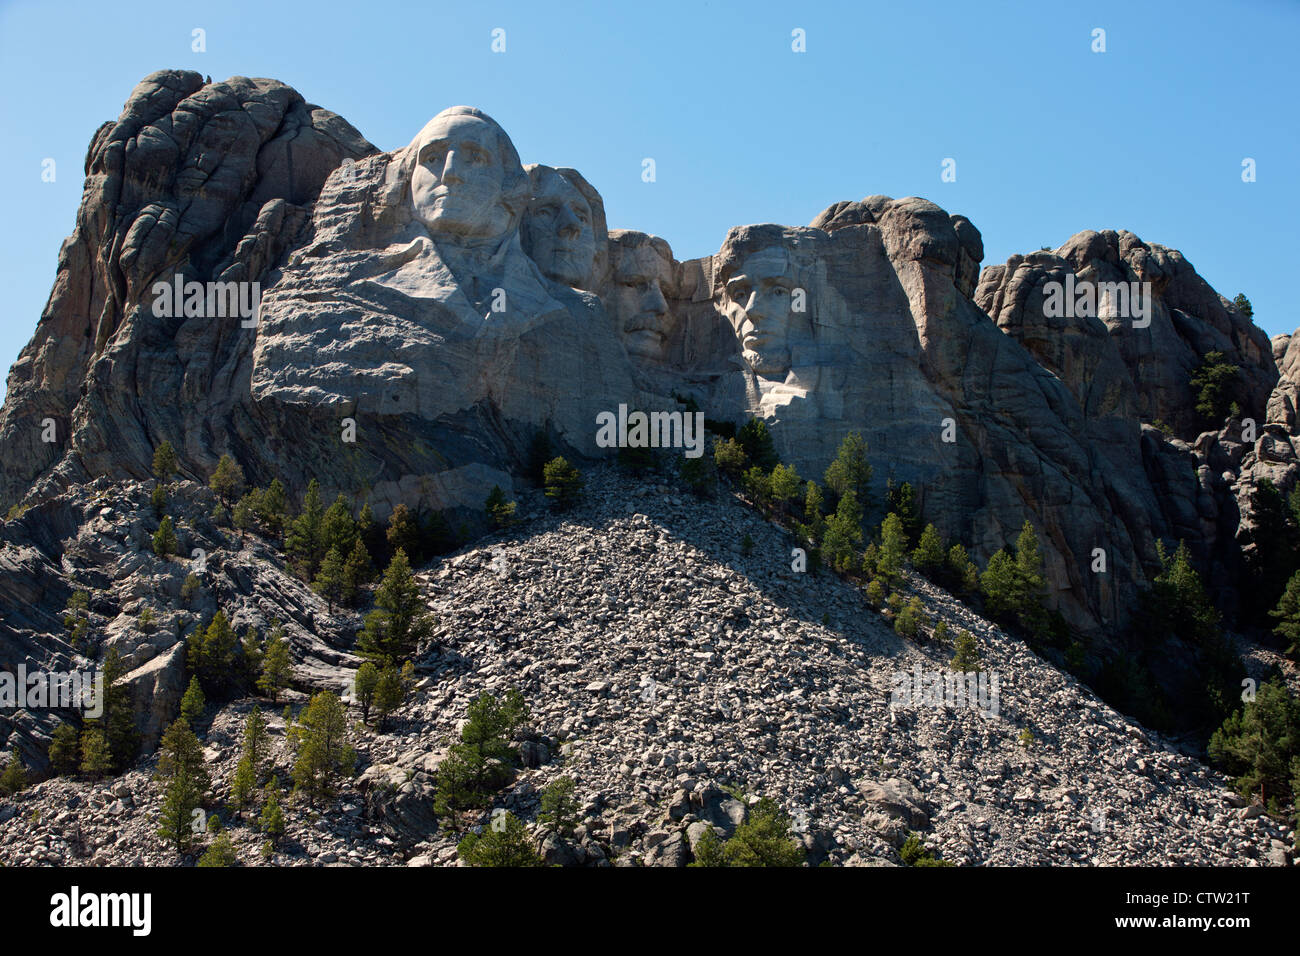 Vue générale Mt. Rushmore avec sculptures d'anciens présidents George Washington, Thomas Jefferson, Theodore Roosevelt et Abraham Lincoln, Monument National du Mont Rushmore, dans le Dakota du Sud, États-Unis d'Amérique Banque D'Images